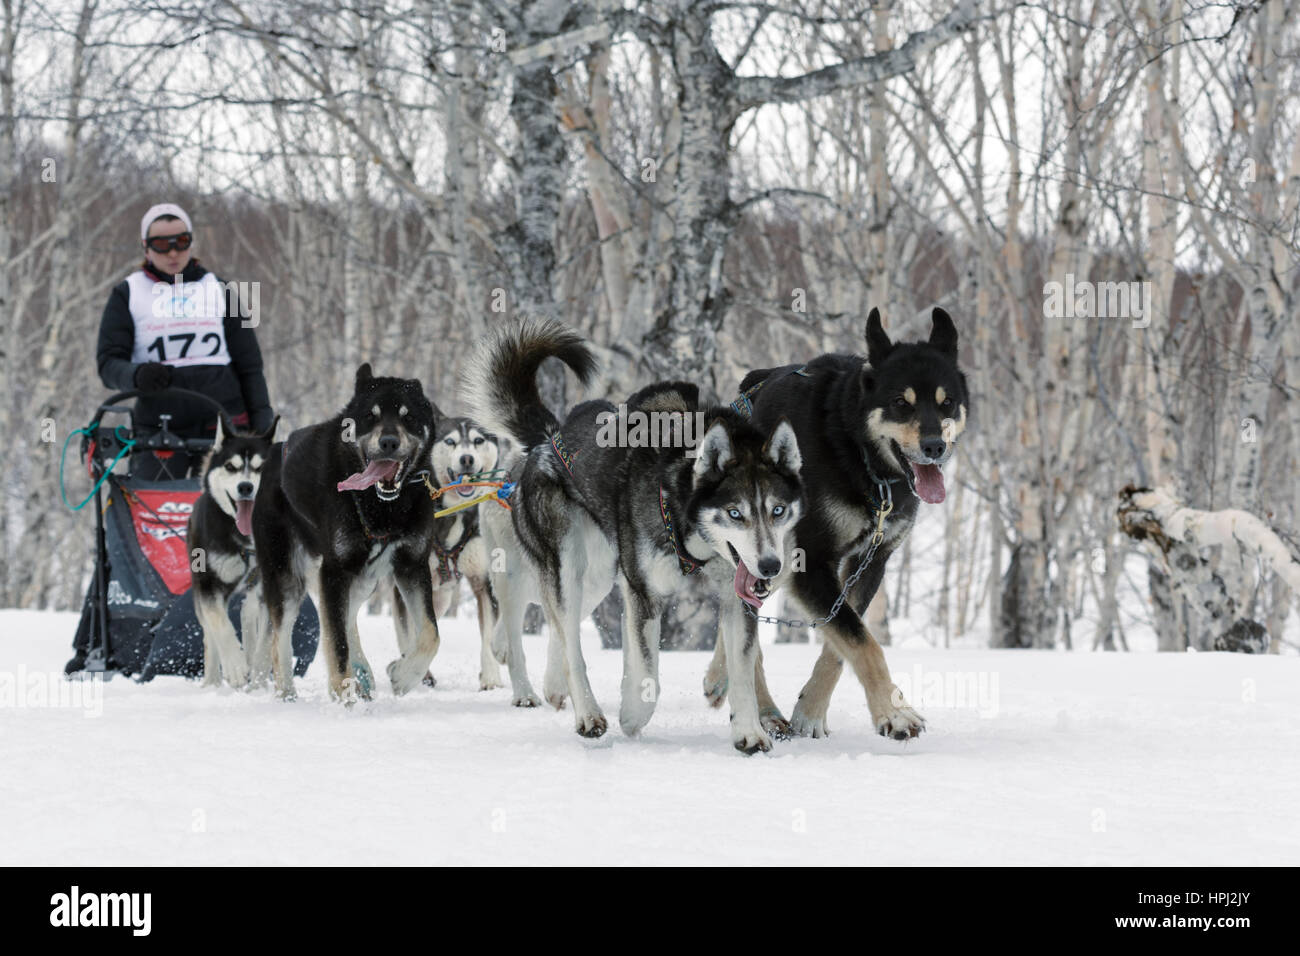 L'exécution de l'équipe de chien de traîneau (Alaskan Husky musher) Semashkina Anastasia. Compétitions régionales Kamtchatka Course de chiens de traîneau à moyenne distance. Banque D'Images